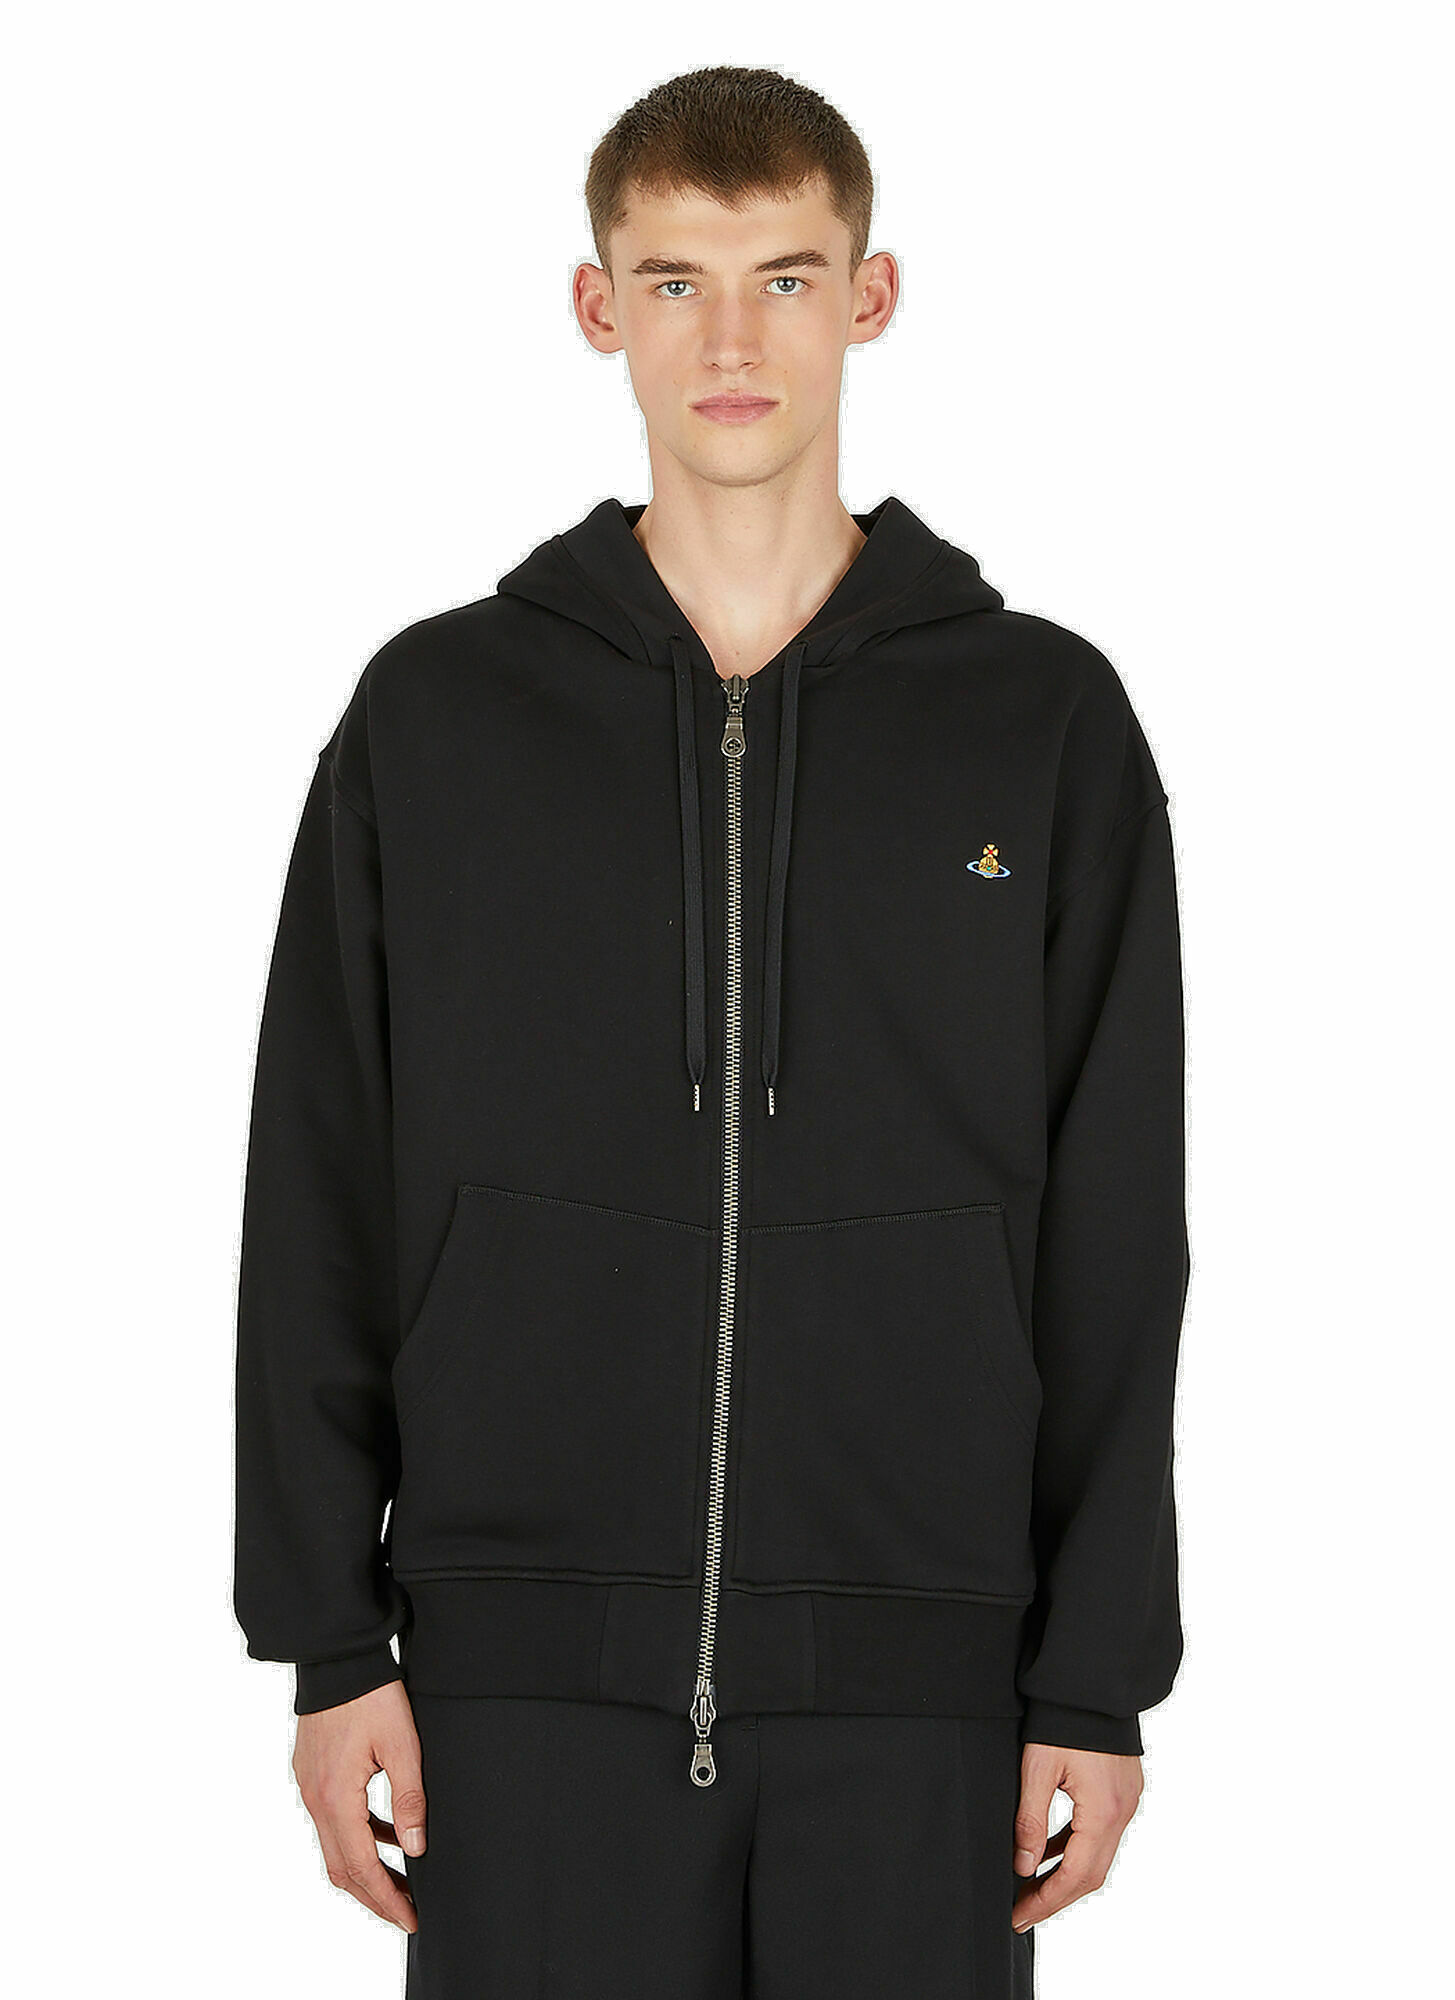 Photo: Rugged Zip Hooded Sweatshirt in Black